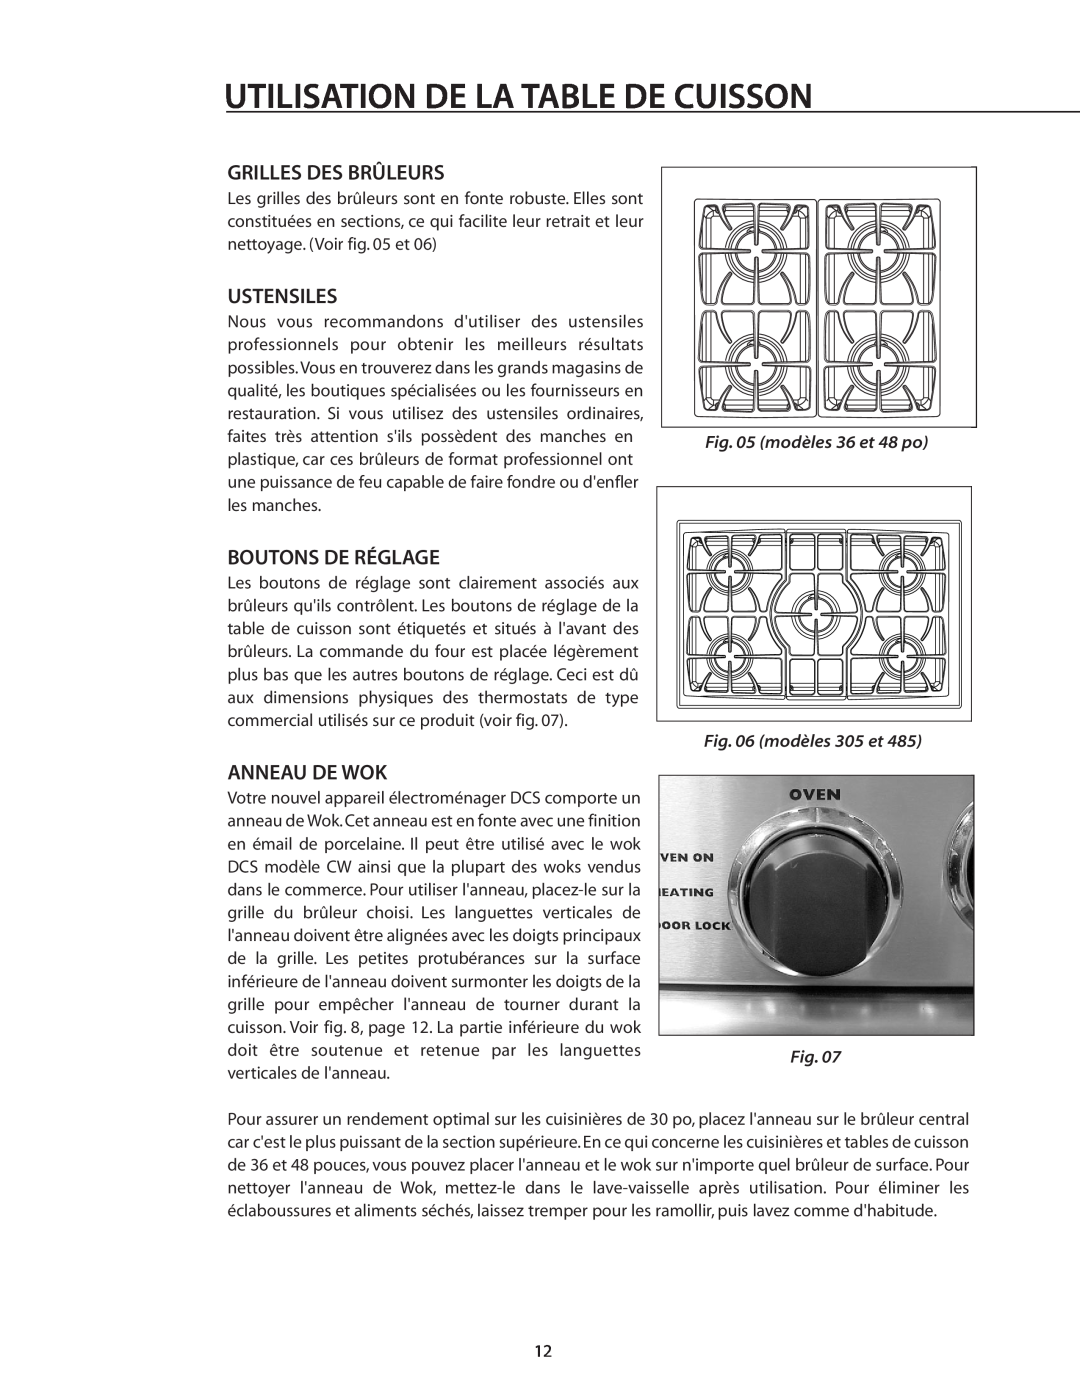 DCS RDS-305 manual Grilles Des Brûleurs, Ustensiles, Boutons De Réglage, Anneau De Wok, Utilisation De La Table De Cuisson 